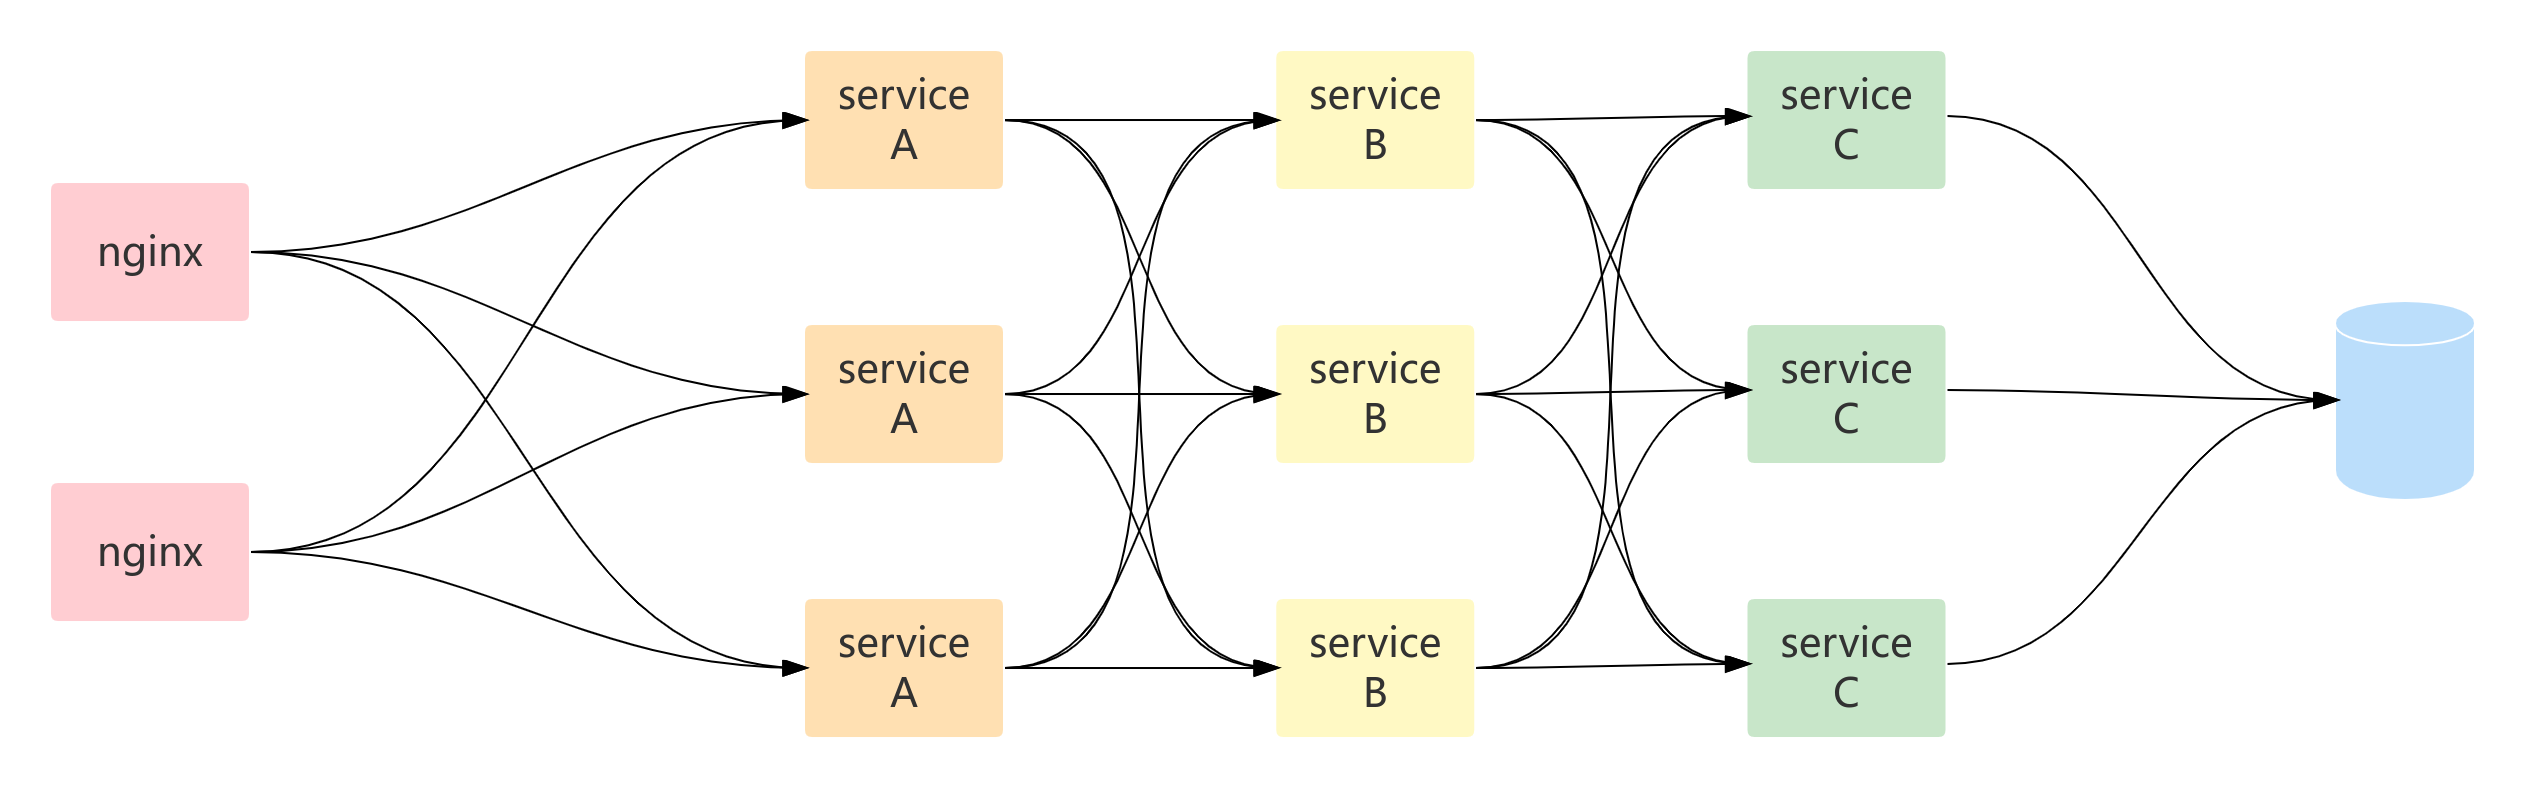 微服务架构